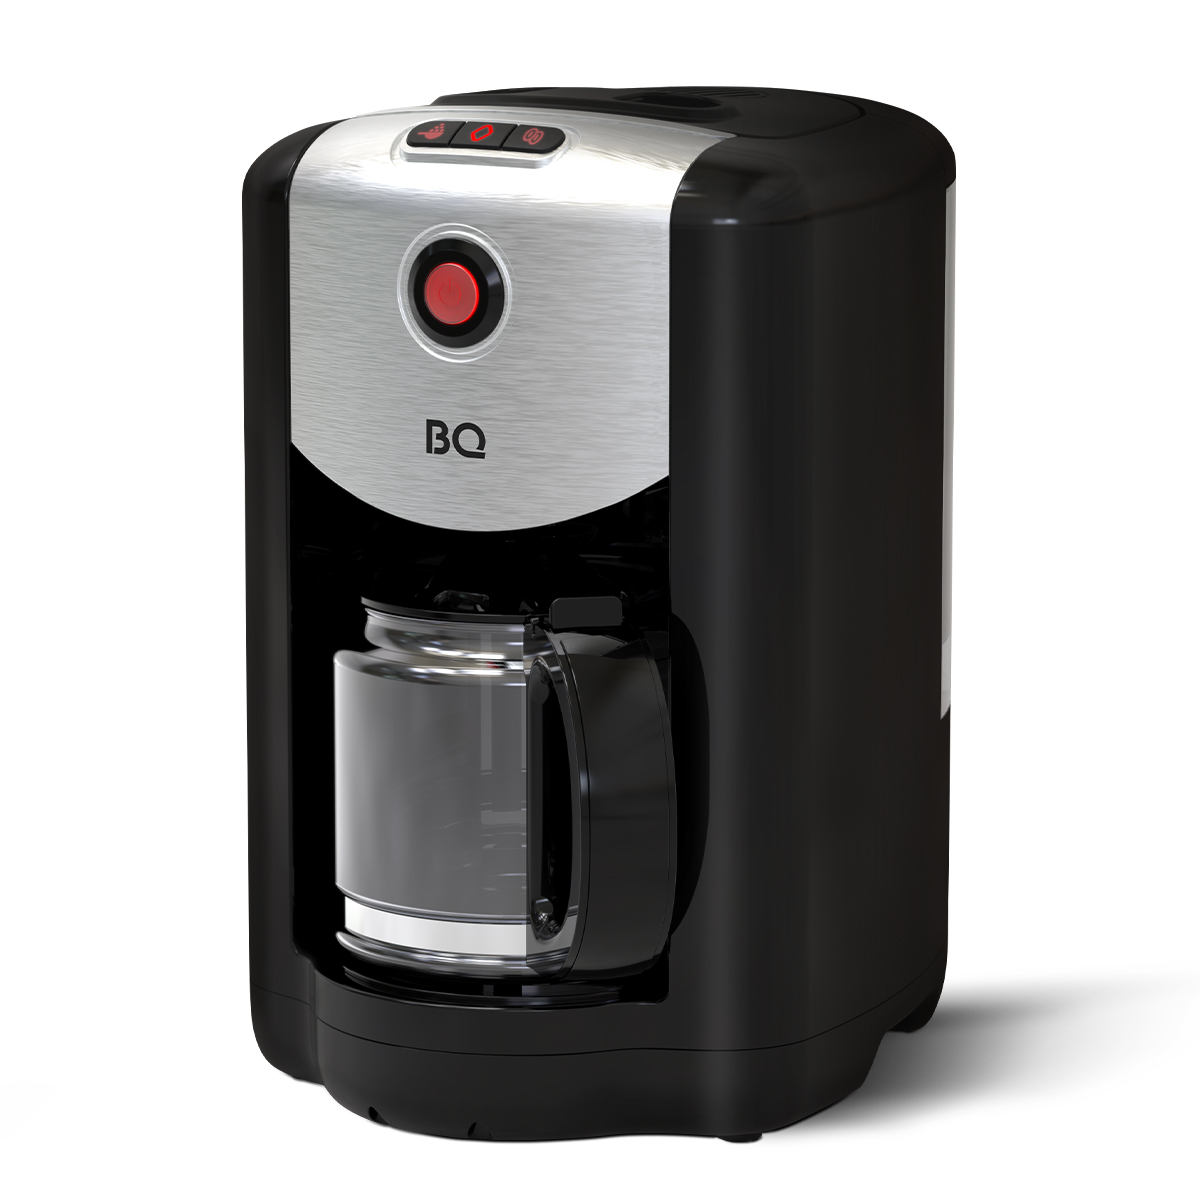 Кофеварка капельного типа BQ CM1009 серебристый, черный кофеварка капельного типа caso coffee compact electronic серебристый